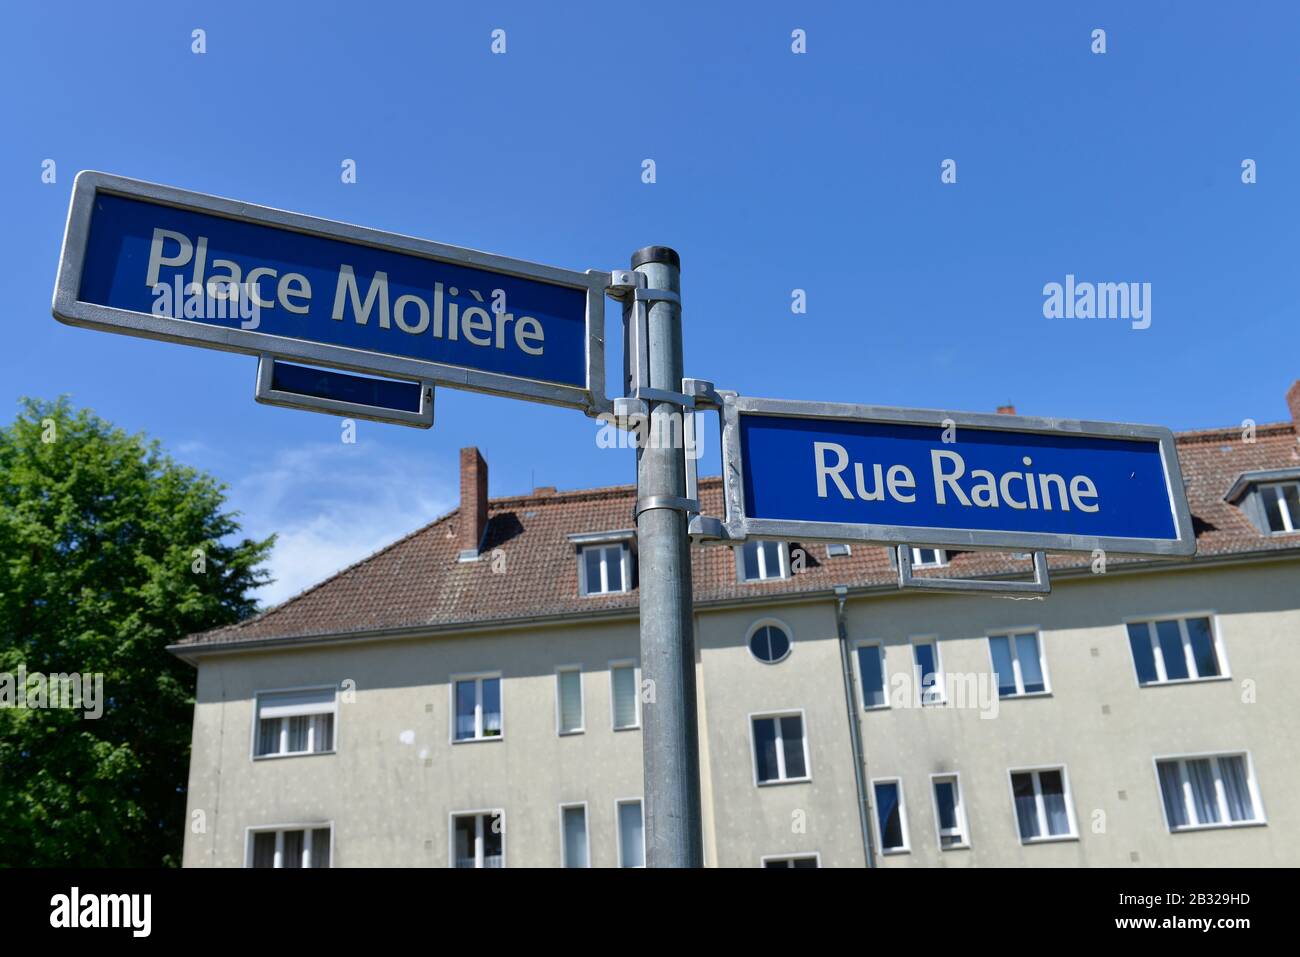 Rue Racine, luogo Moliere, Cite Foch, Wittenau, Reinickendorf, Berlino, Deutschland Foto Stock